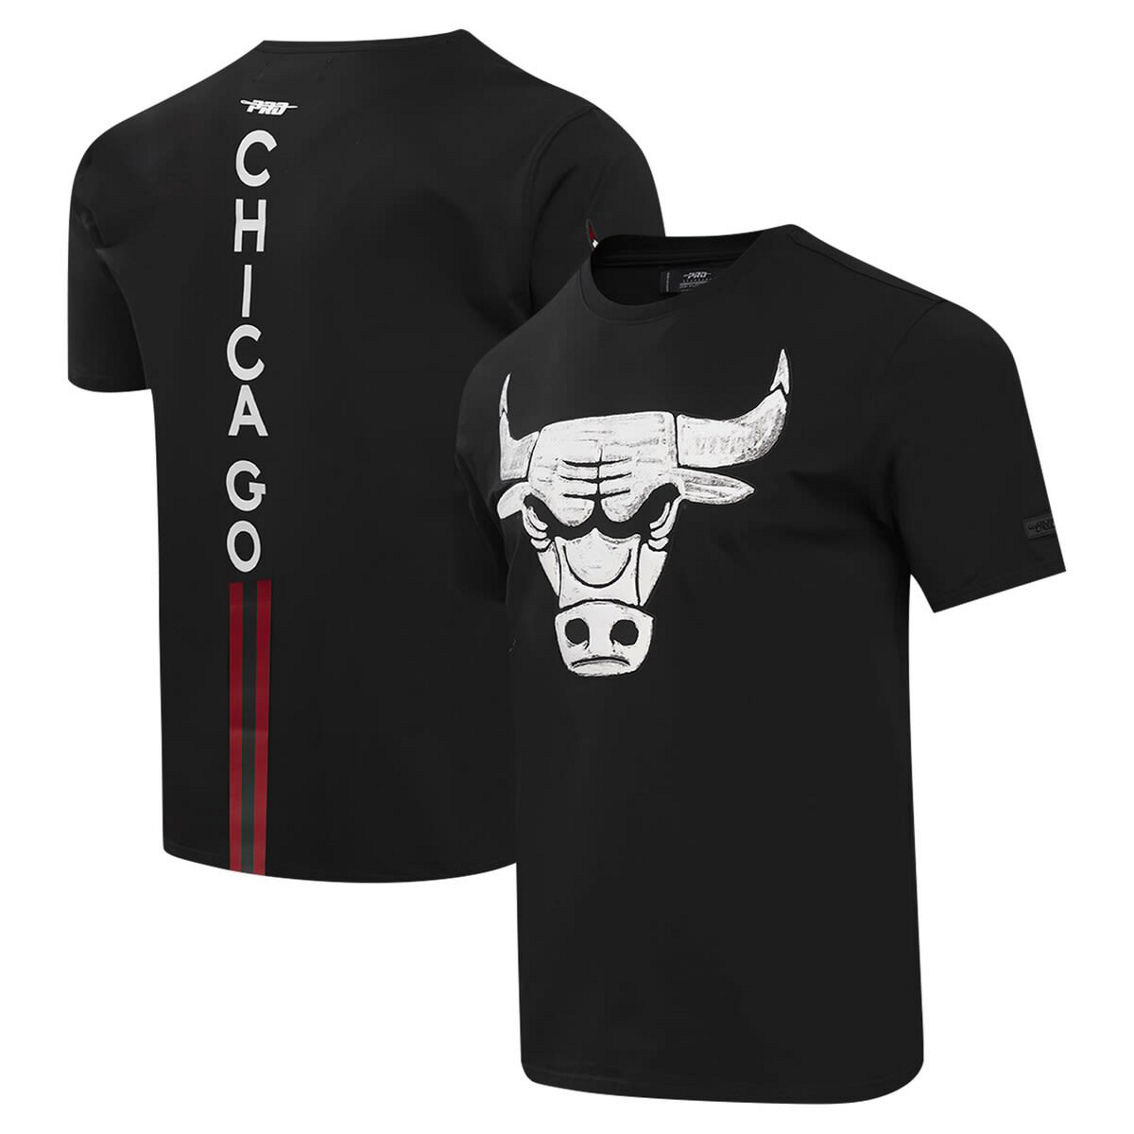 Pro Standard Men's Black Chicago Bulls T-Shirt - Image 2 of 2